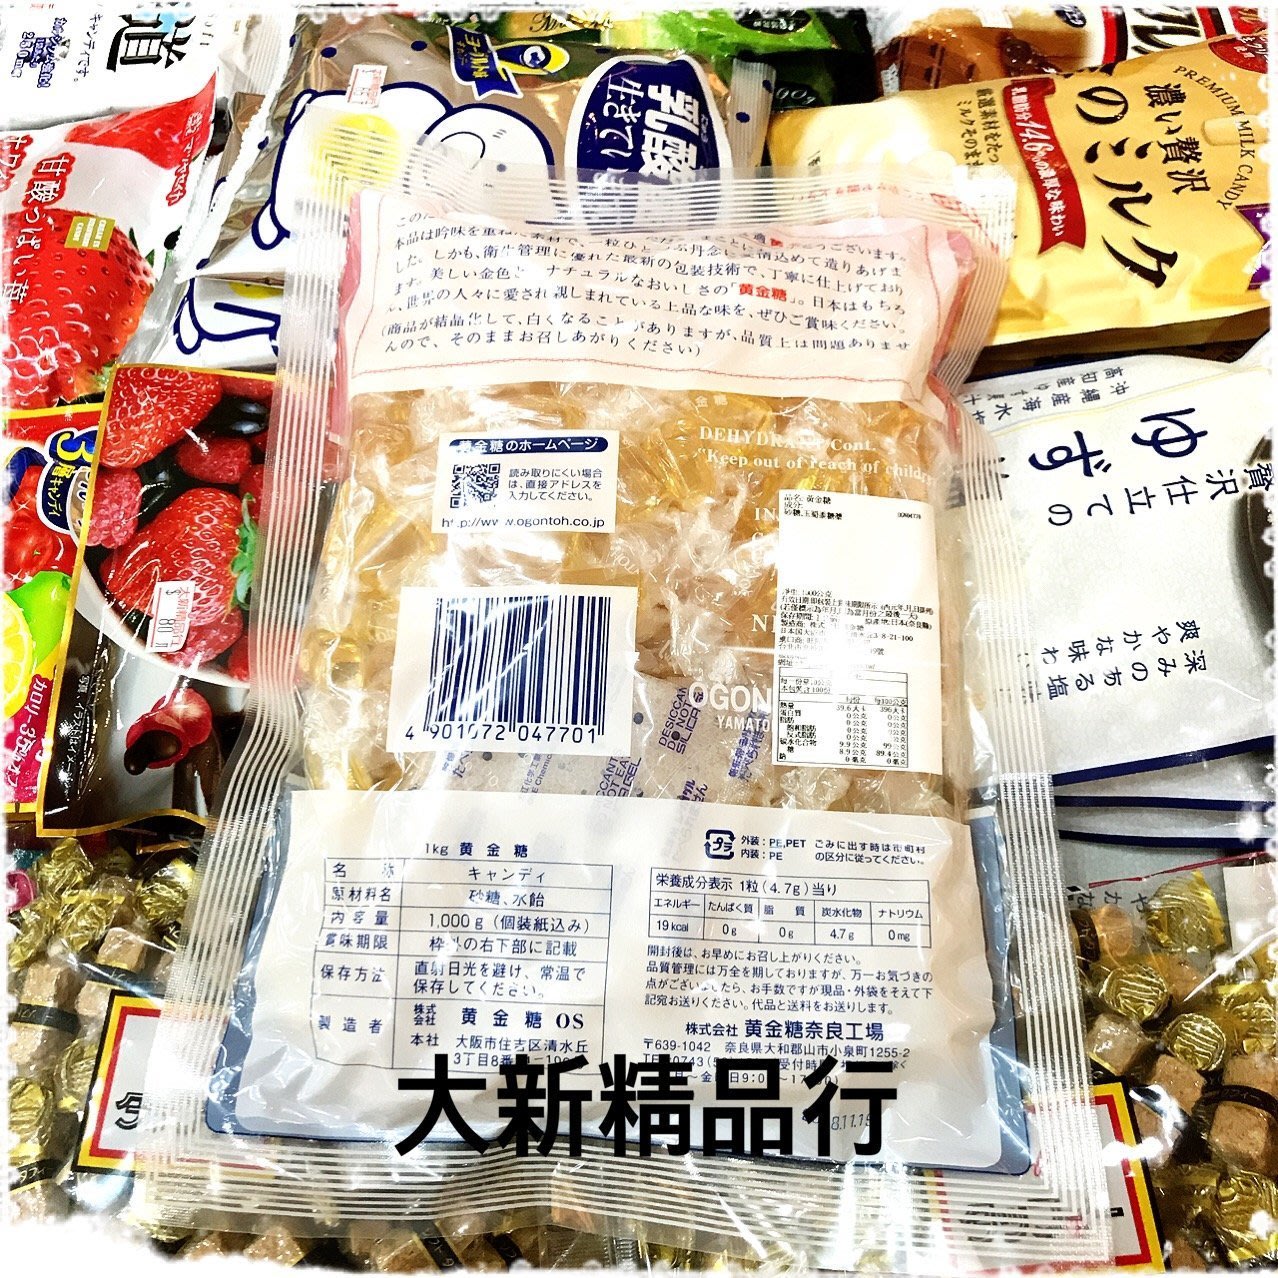 三鳳中街］日本原裝進口OGONTOH 黃金糖(1000g) 超大包裝特賣| Yahoo奇摩拍賣